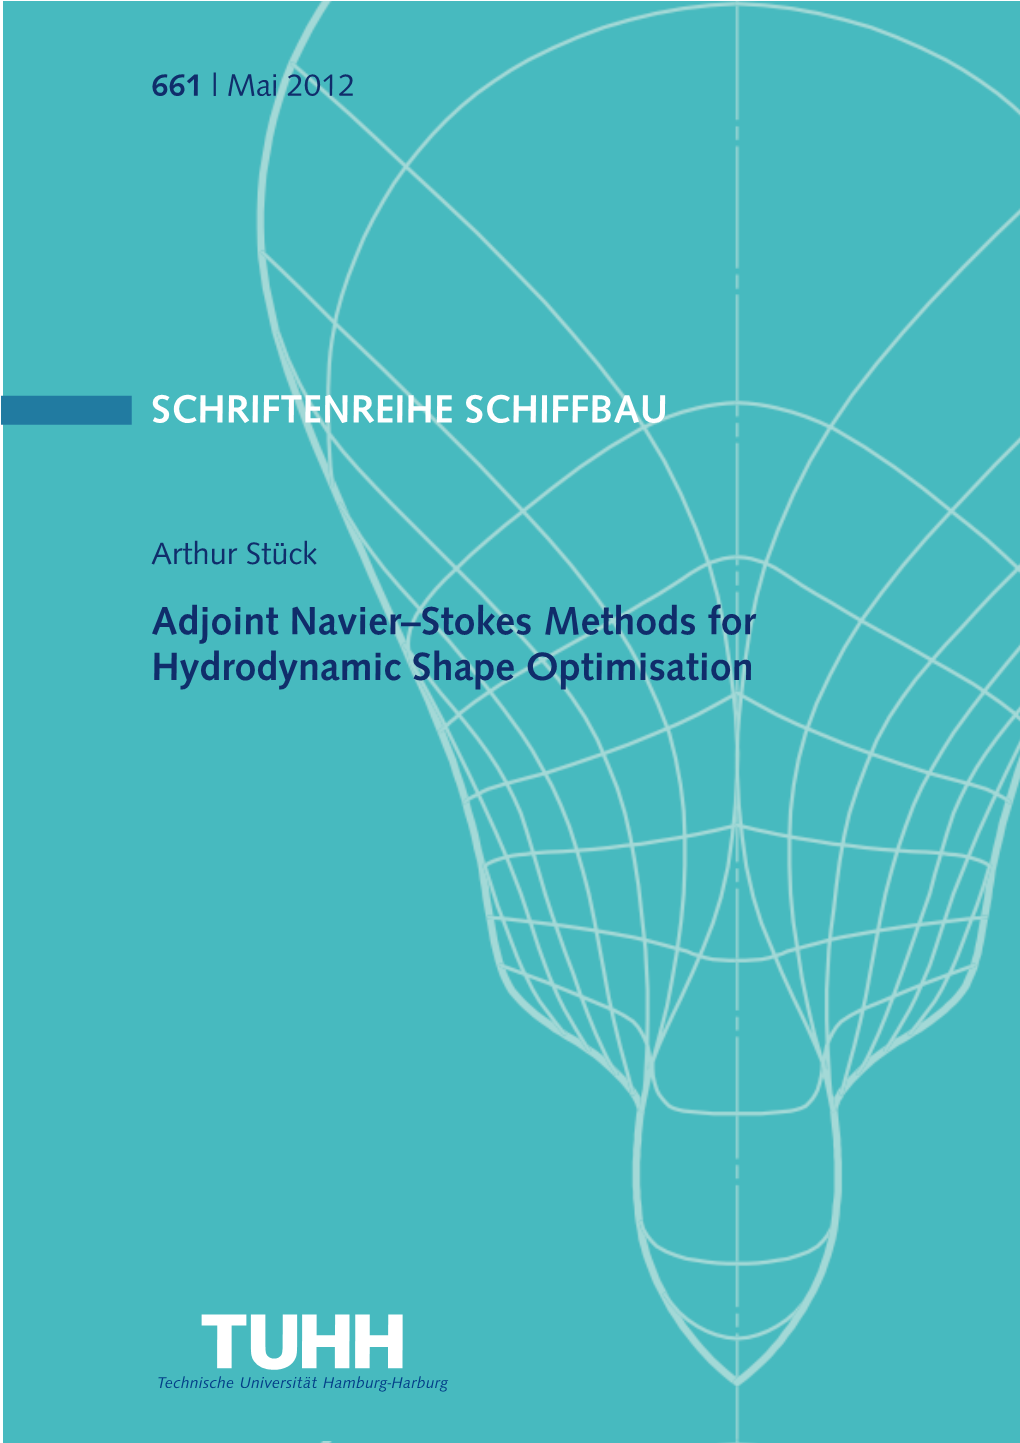 Adjoint Navier-Stokes Methods for Hydrodynamic Shape Optimisation